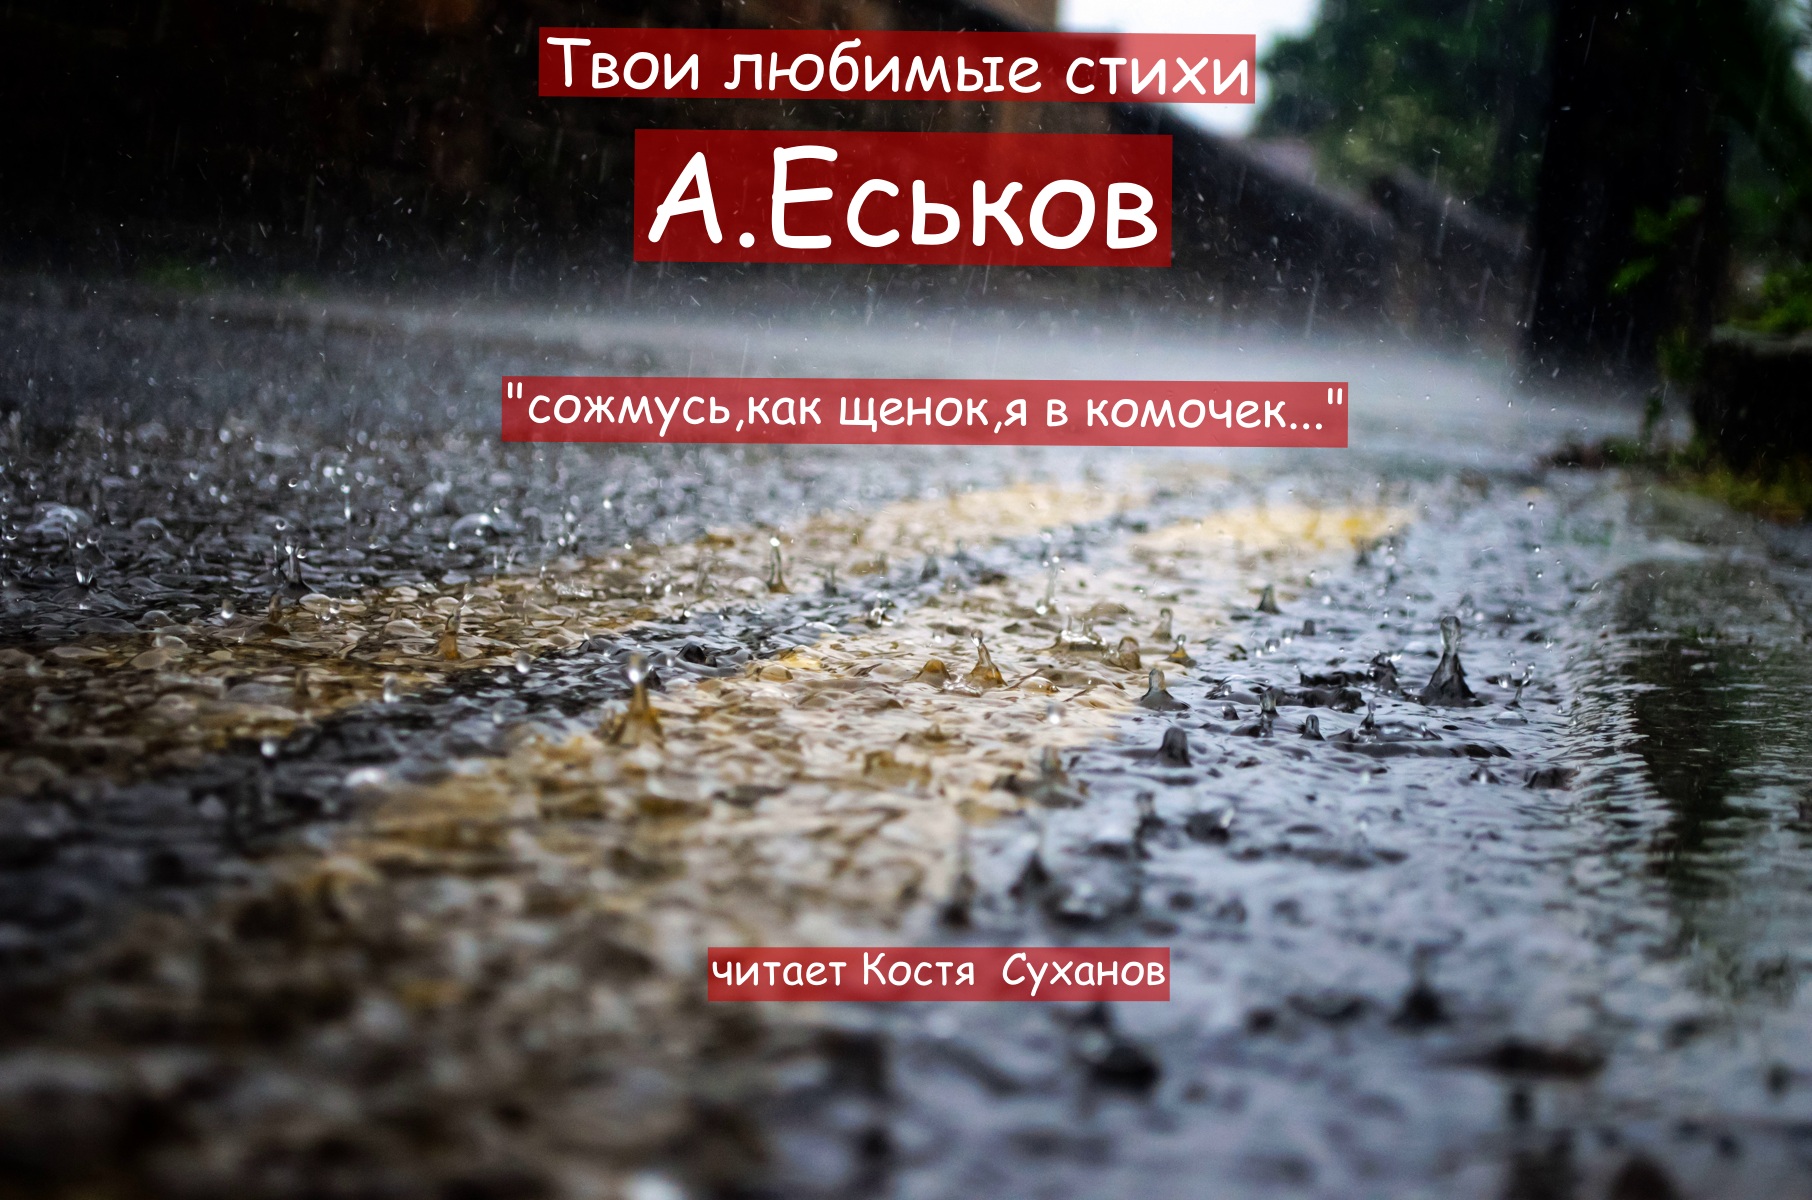 Стихи. " А Еськов сожмусь,как щенок ,я в комочек " читает актер Костя Суханов.